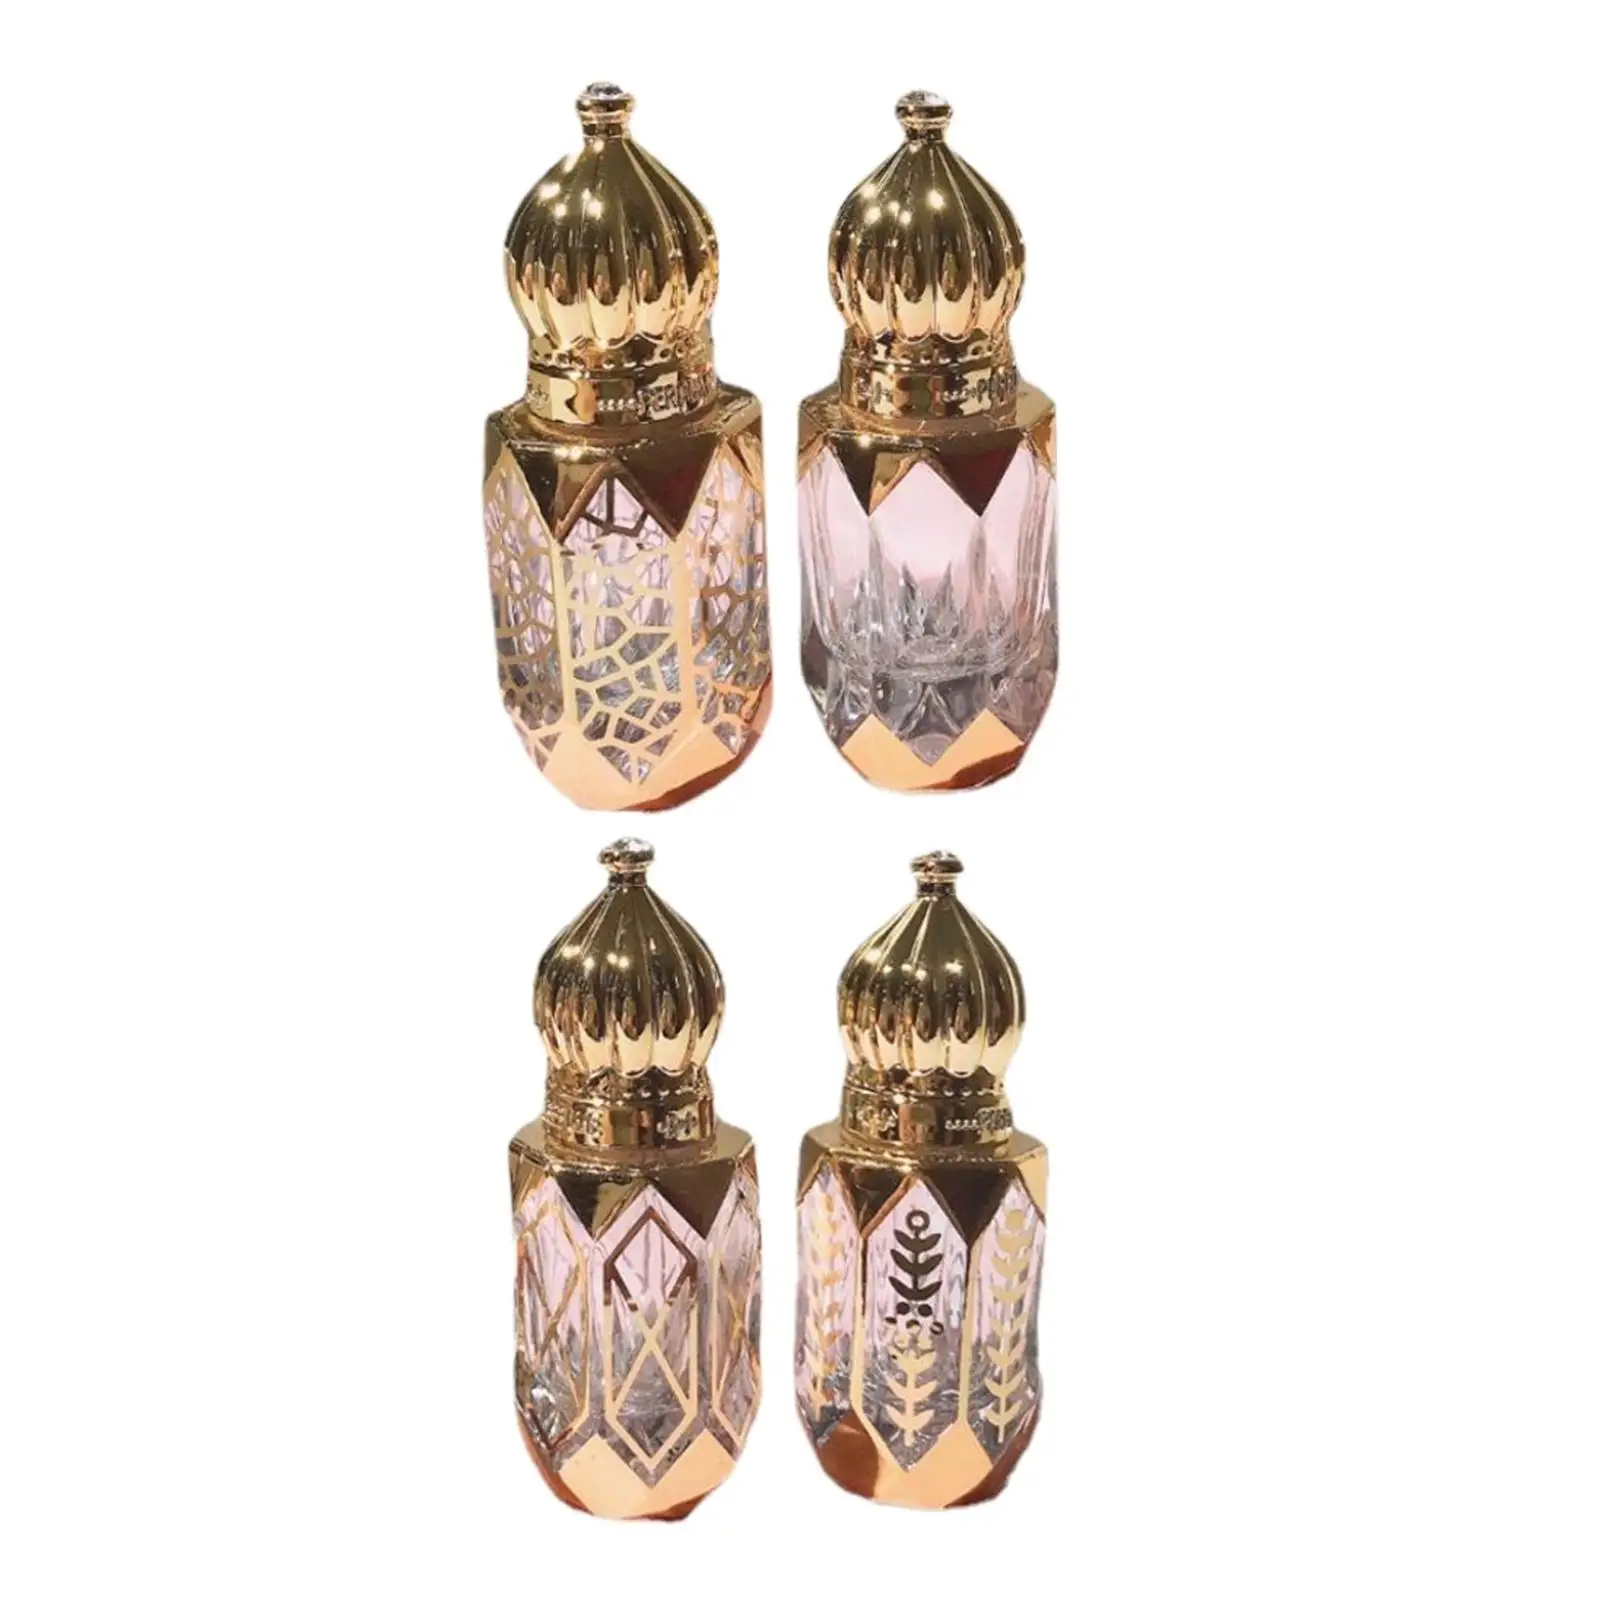 4 Pieces On Bottles Golden 6ml Roller Bottles Vial for Perfume